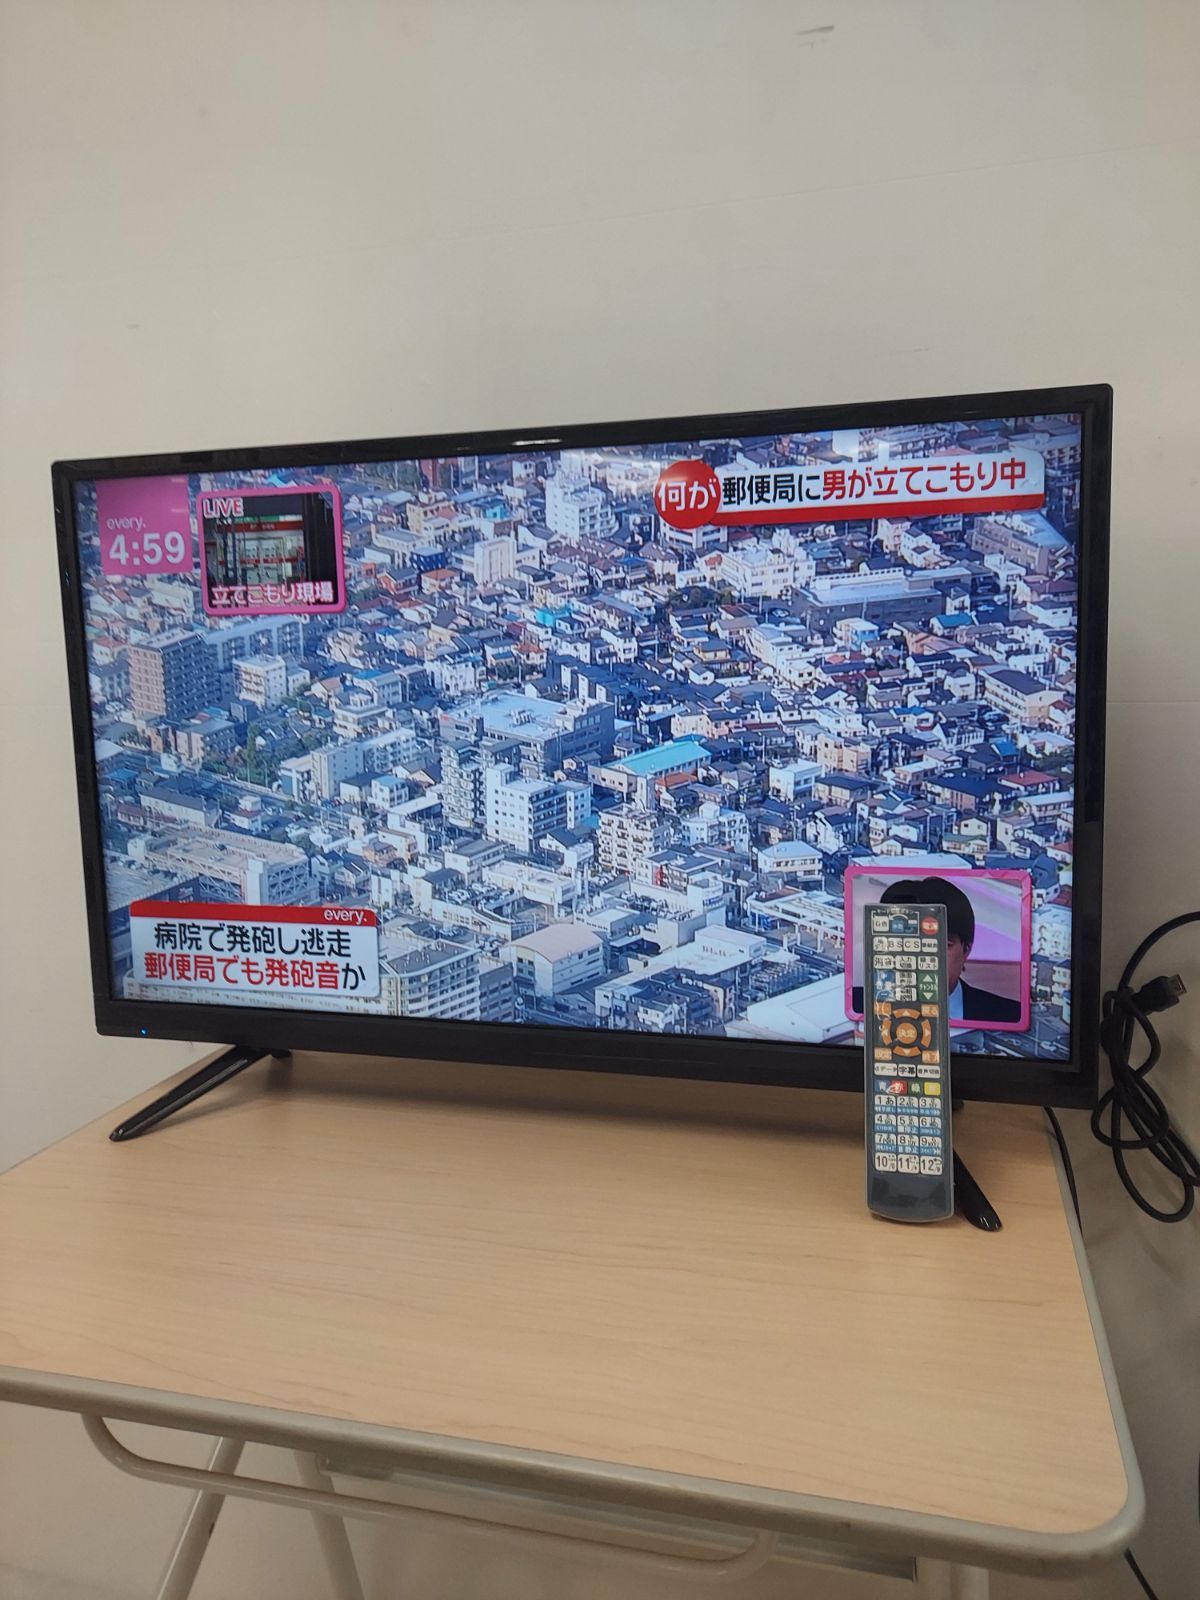 テレビ TV 32型 32インチ 2018年 株式会社アズマ LE-3241A 本体のみ